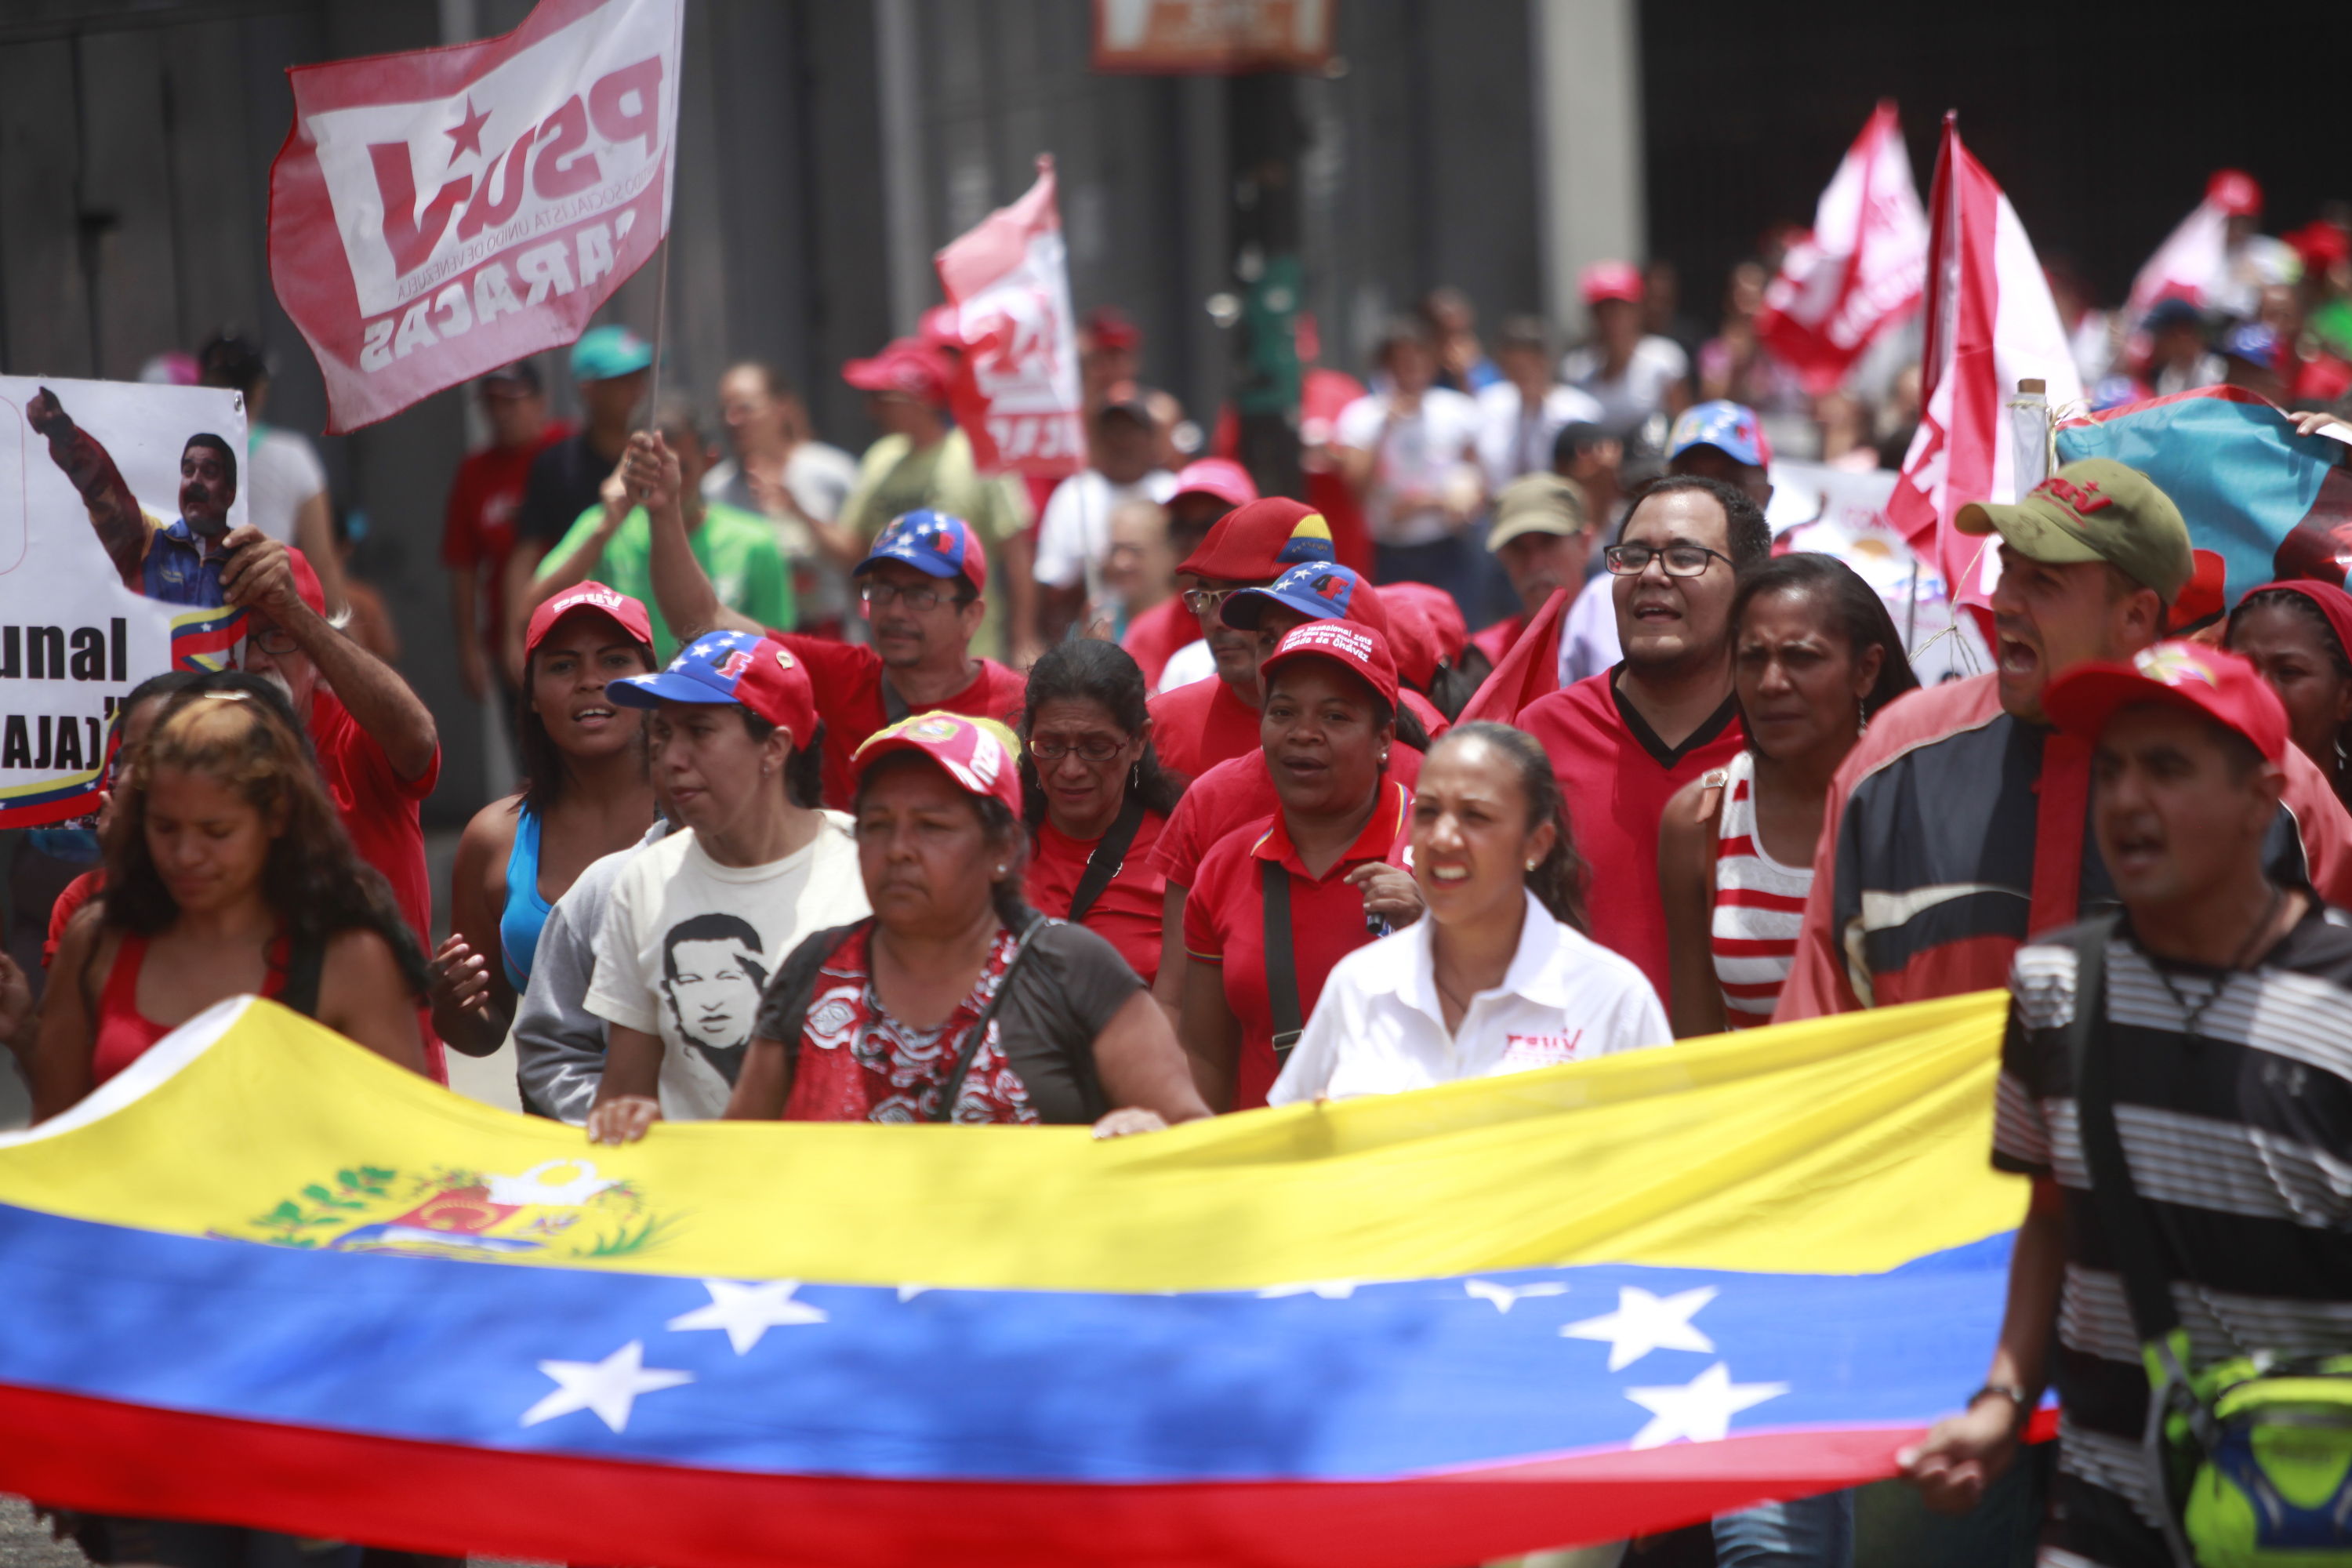 El vicepresidente venezolano indicó que la movilización partirá desde las parroquias Petare, Catia, La Bandera y el 23 de Enero hasta llegar al centro de Caracas.